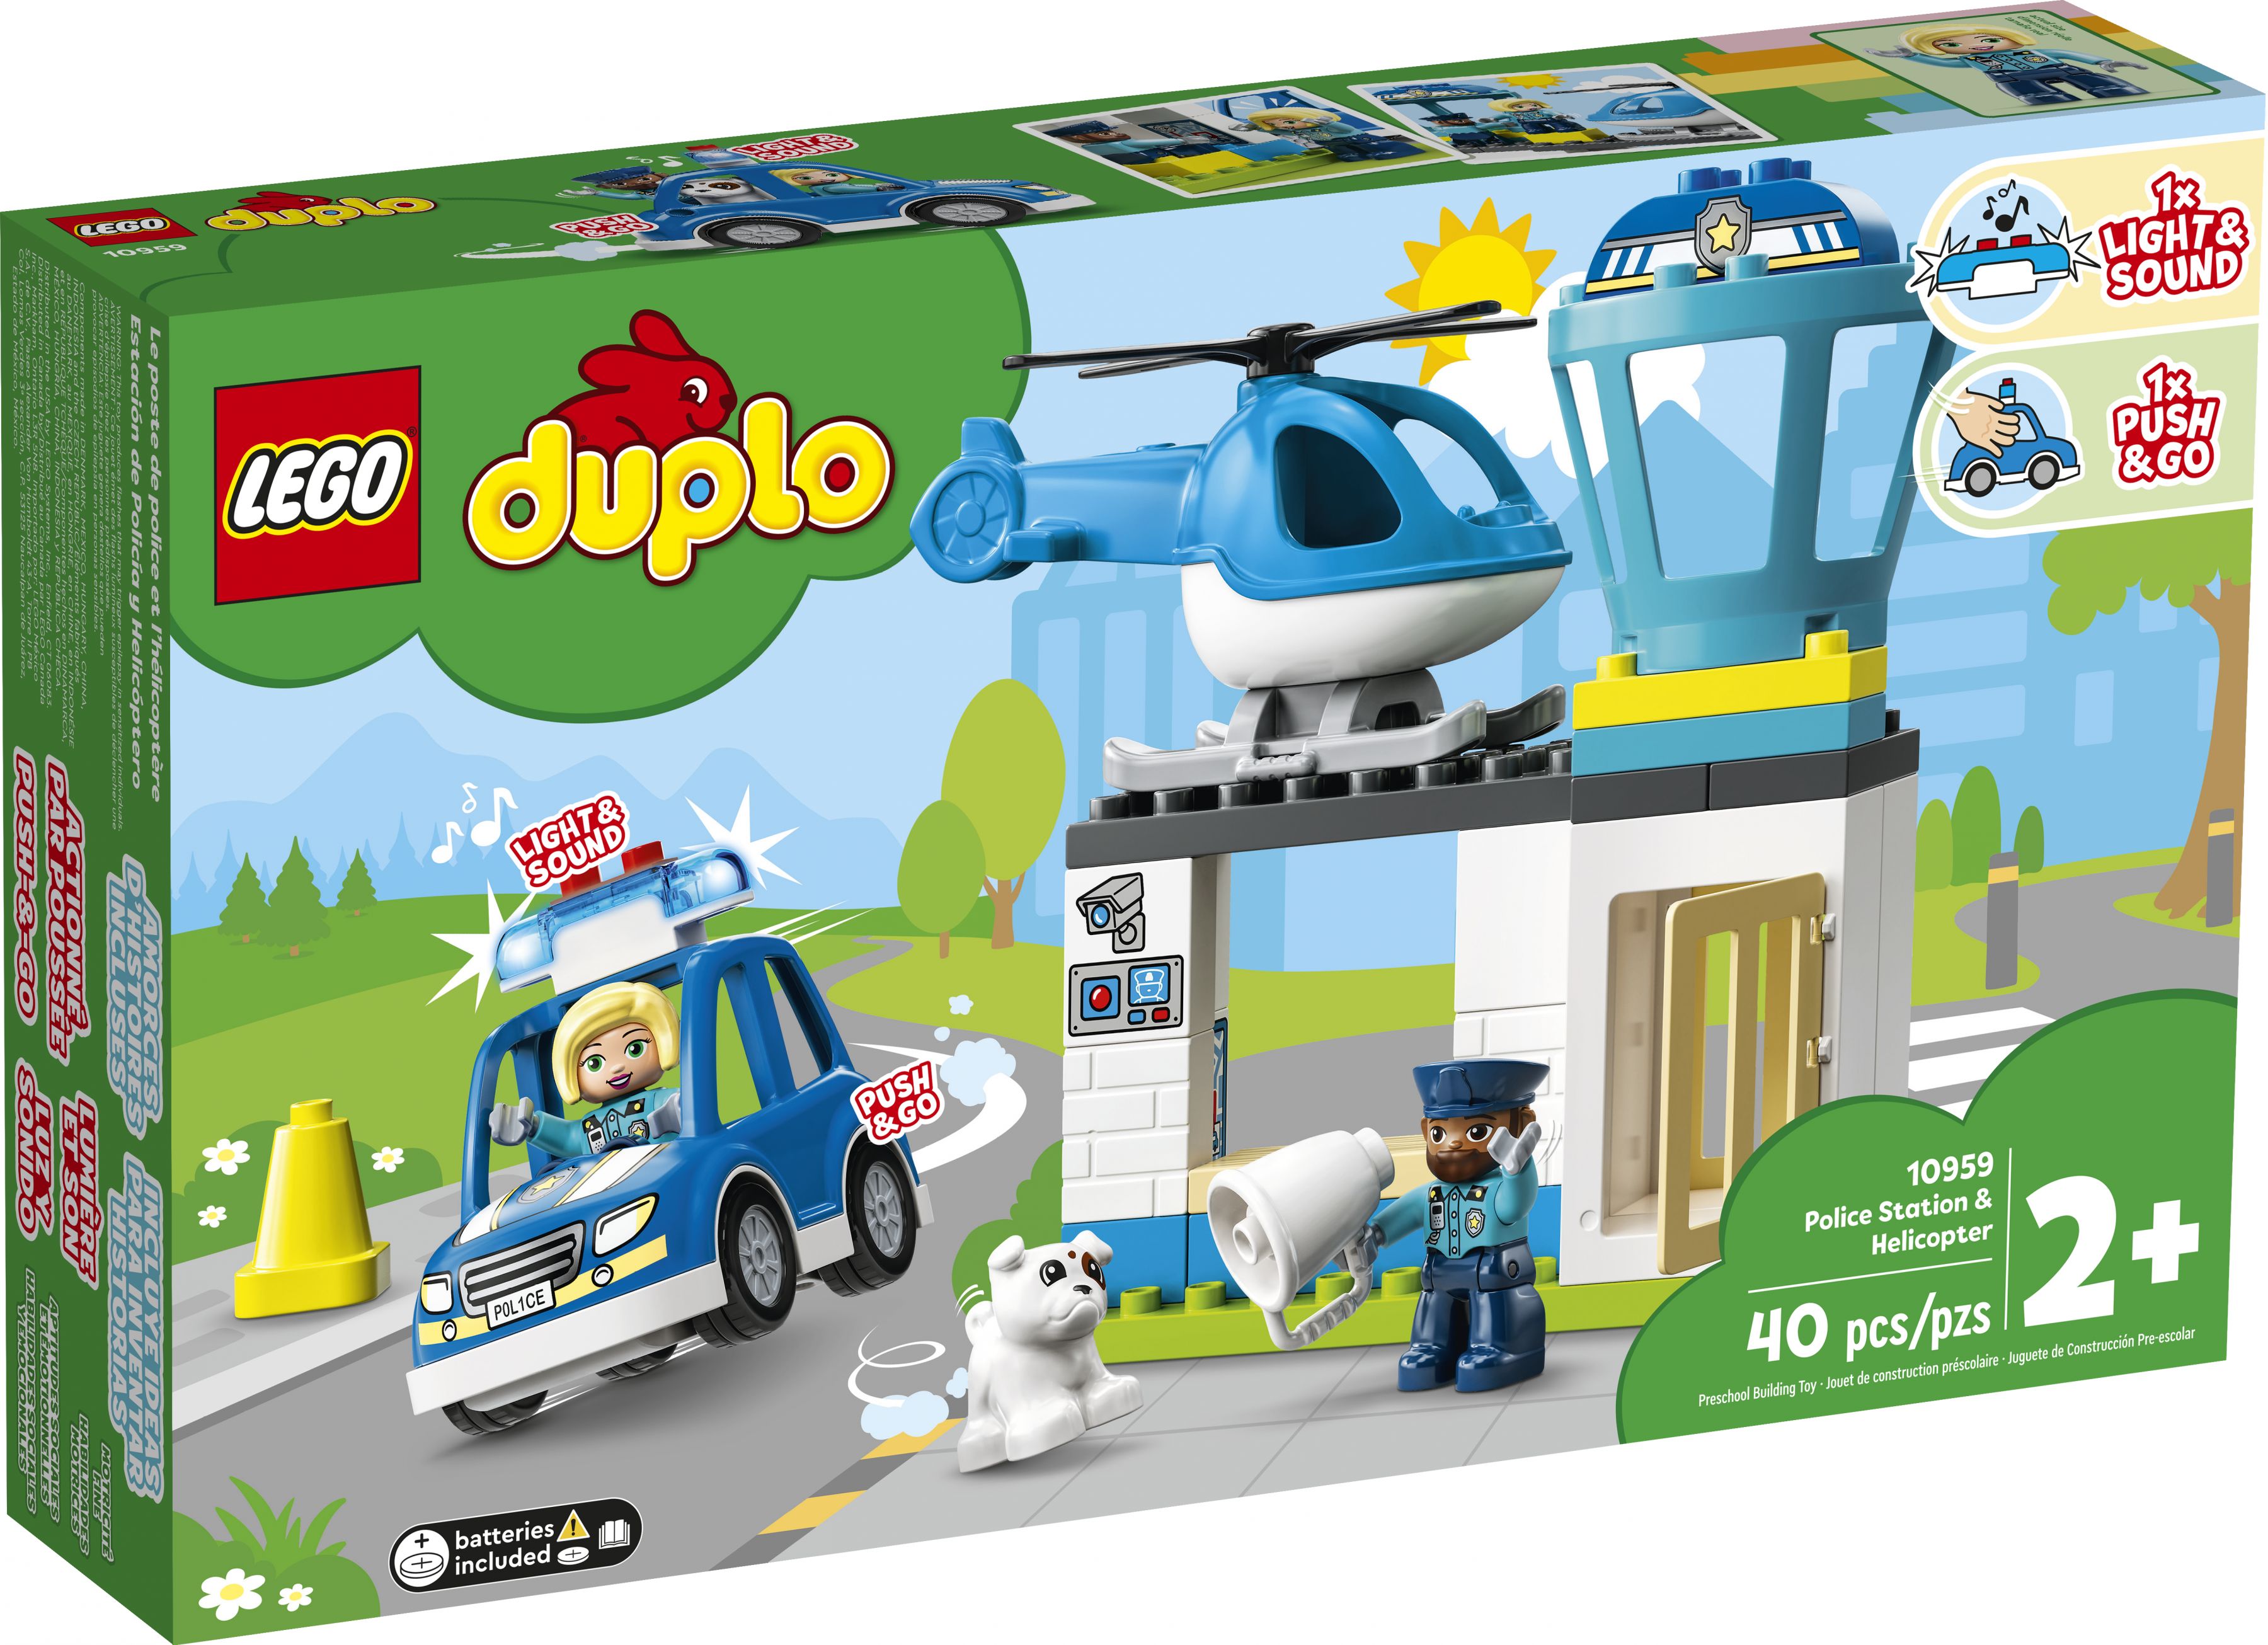 LEGO Duplo 10959 Polizeistation mit Hubschrauber LEGO_10959_Box1_v39.jpg